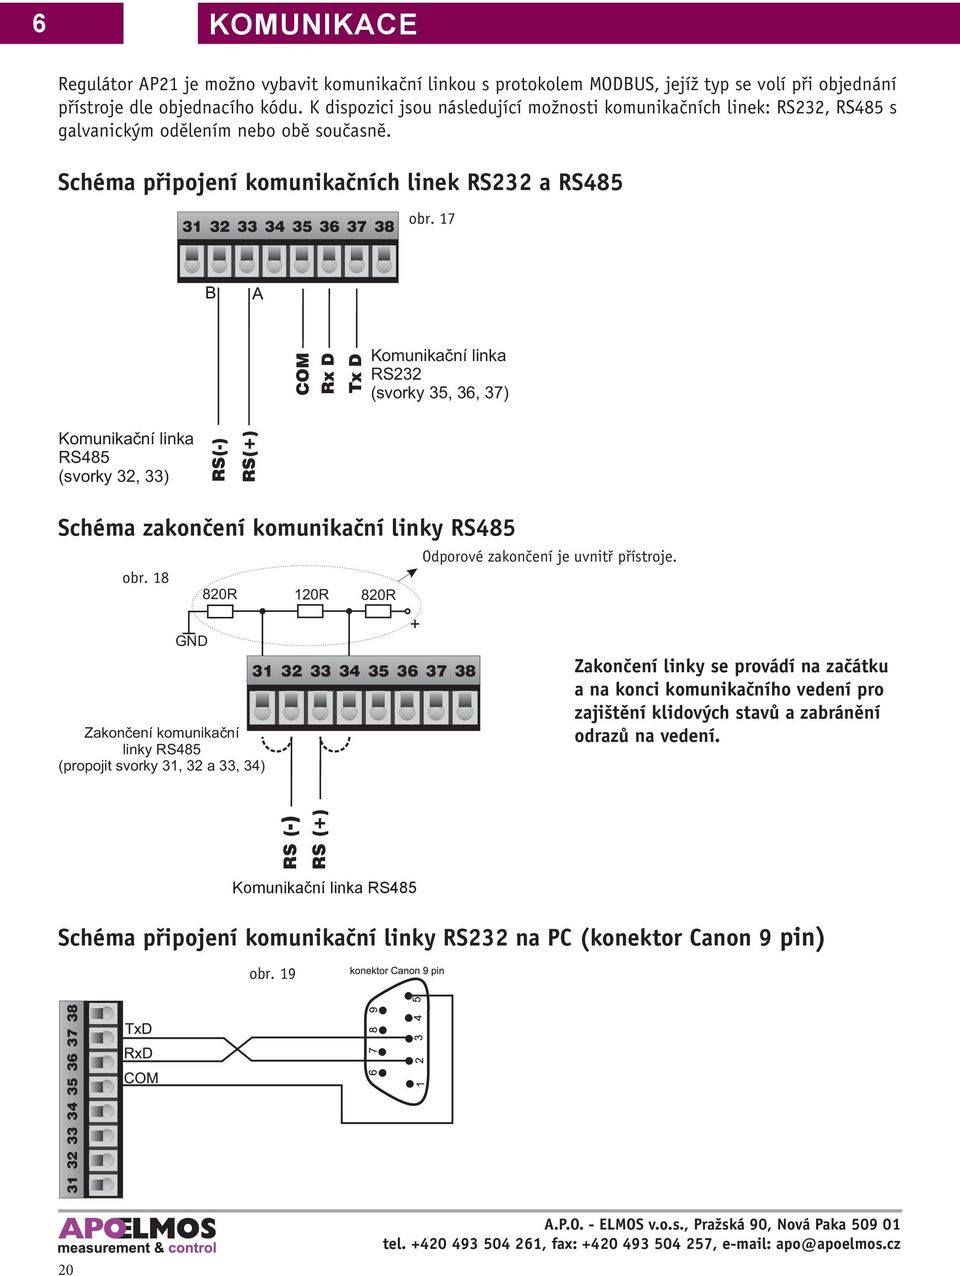 17 COM Rx D Tx D Komunikační linka RS232 (svorky 35, 36, 37) Komunikační linka RS485 (svorky 32, 33) Schéma zakončení komunikační linky RS485 obr.